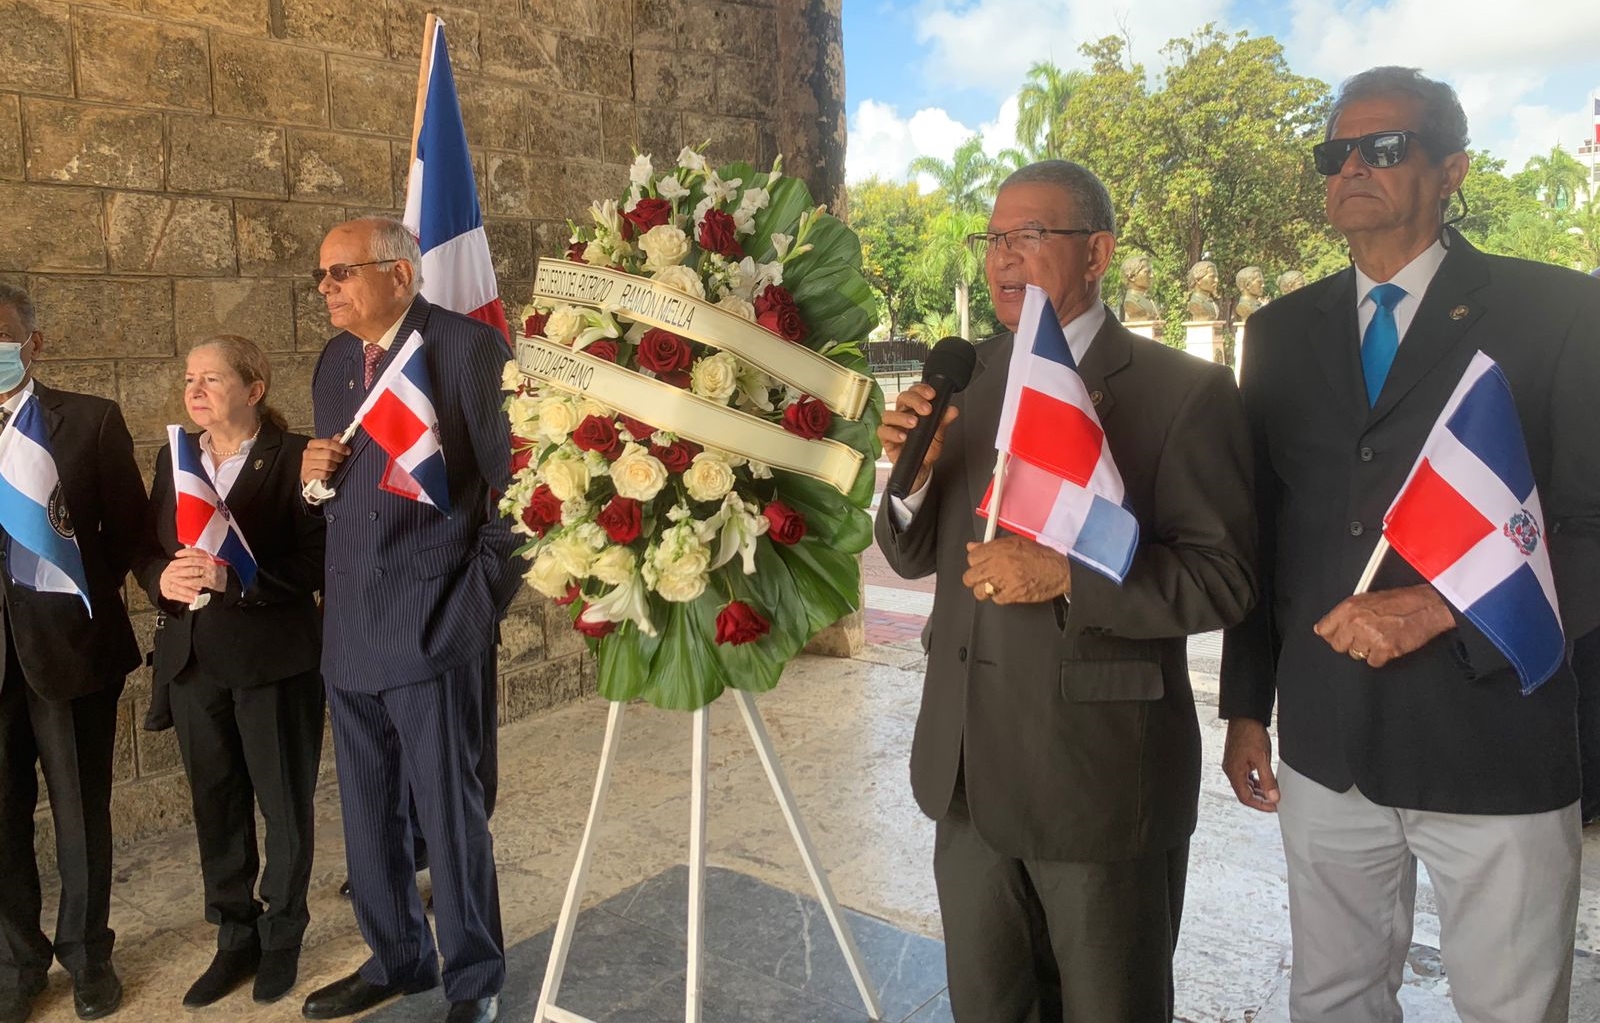 Ven ilegal acuerdo Industriales de Santiago y el Consulado haitiano |  AlMomento.Net - Noticias al Instante en República Dominicana.